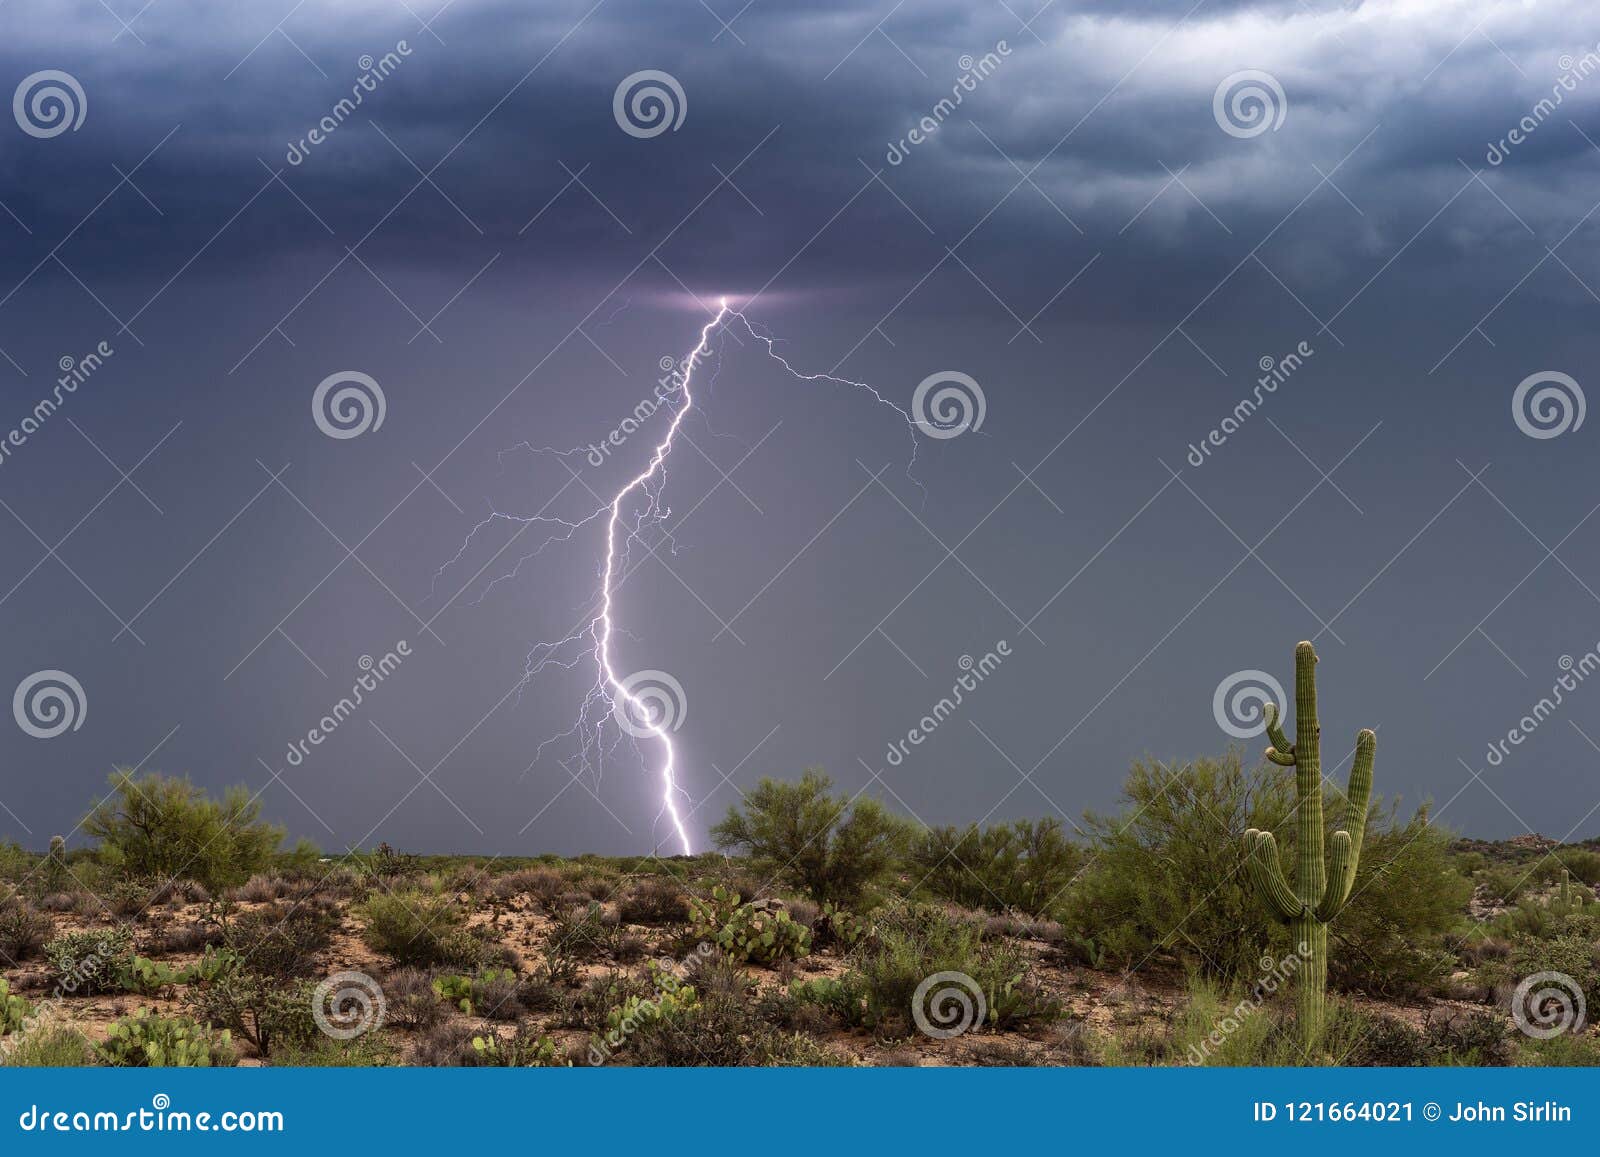 lightning bolt strikes in a monsoon thunderstorm over the arizona desert.